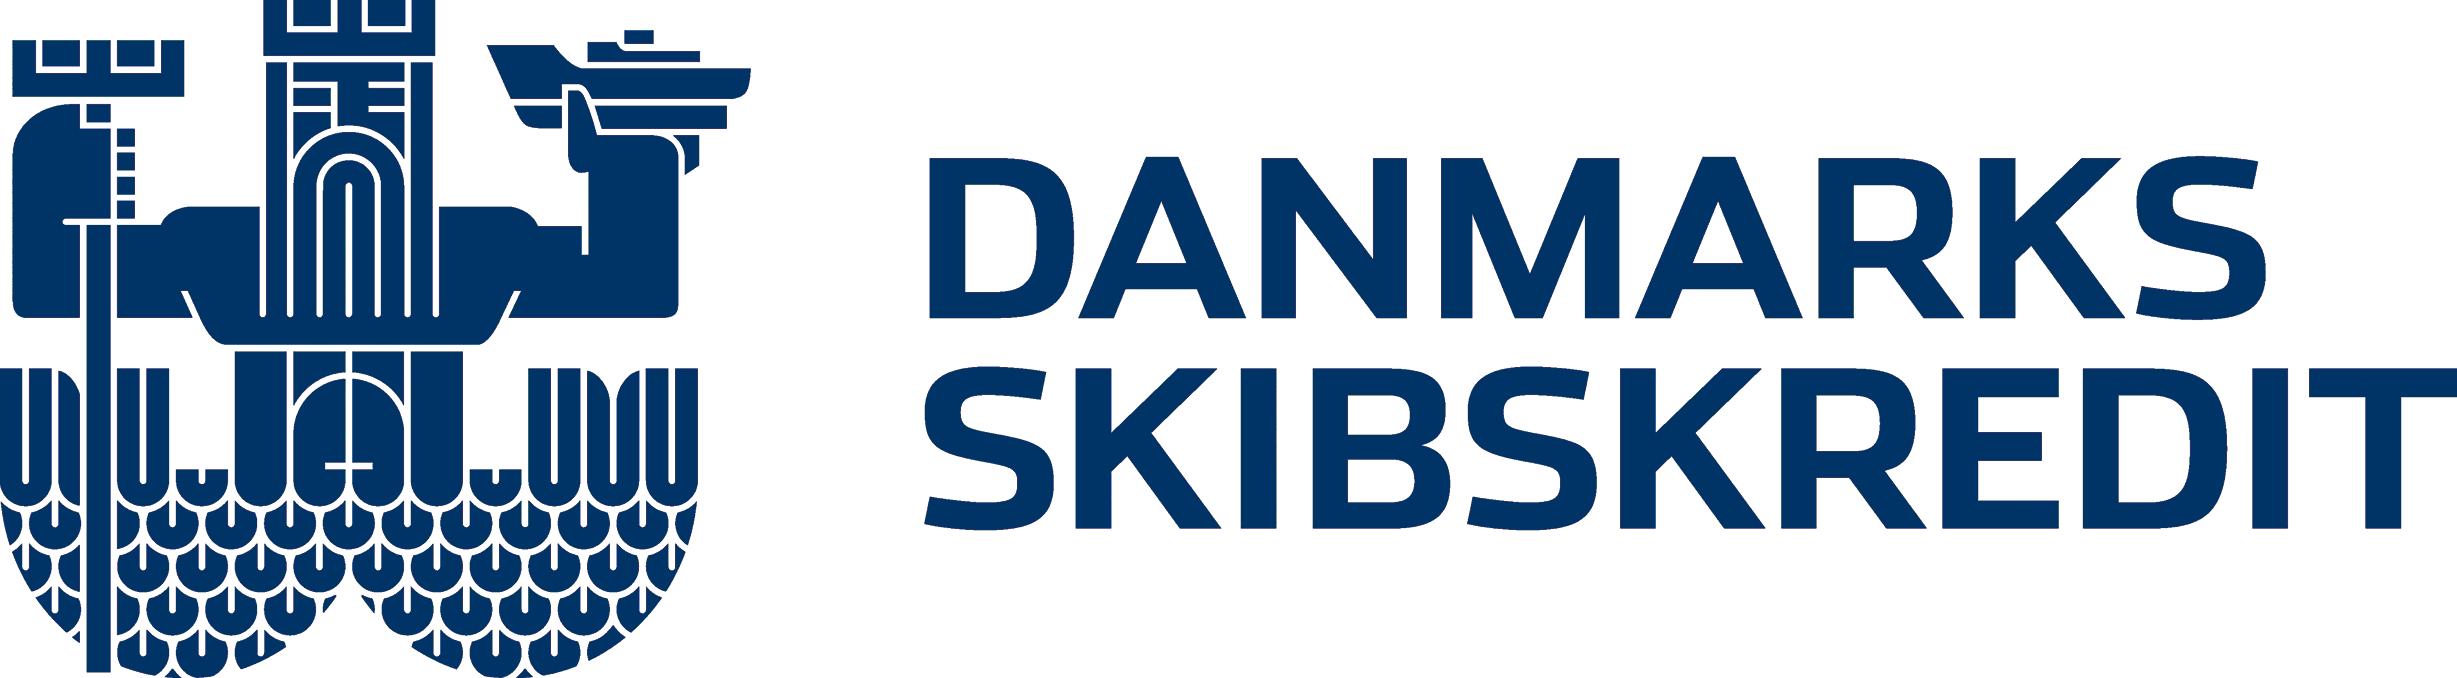 Primær DS DK logo Hvidt-blåt.jpg